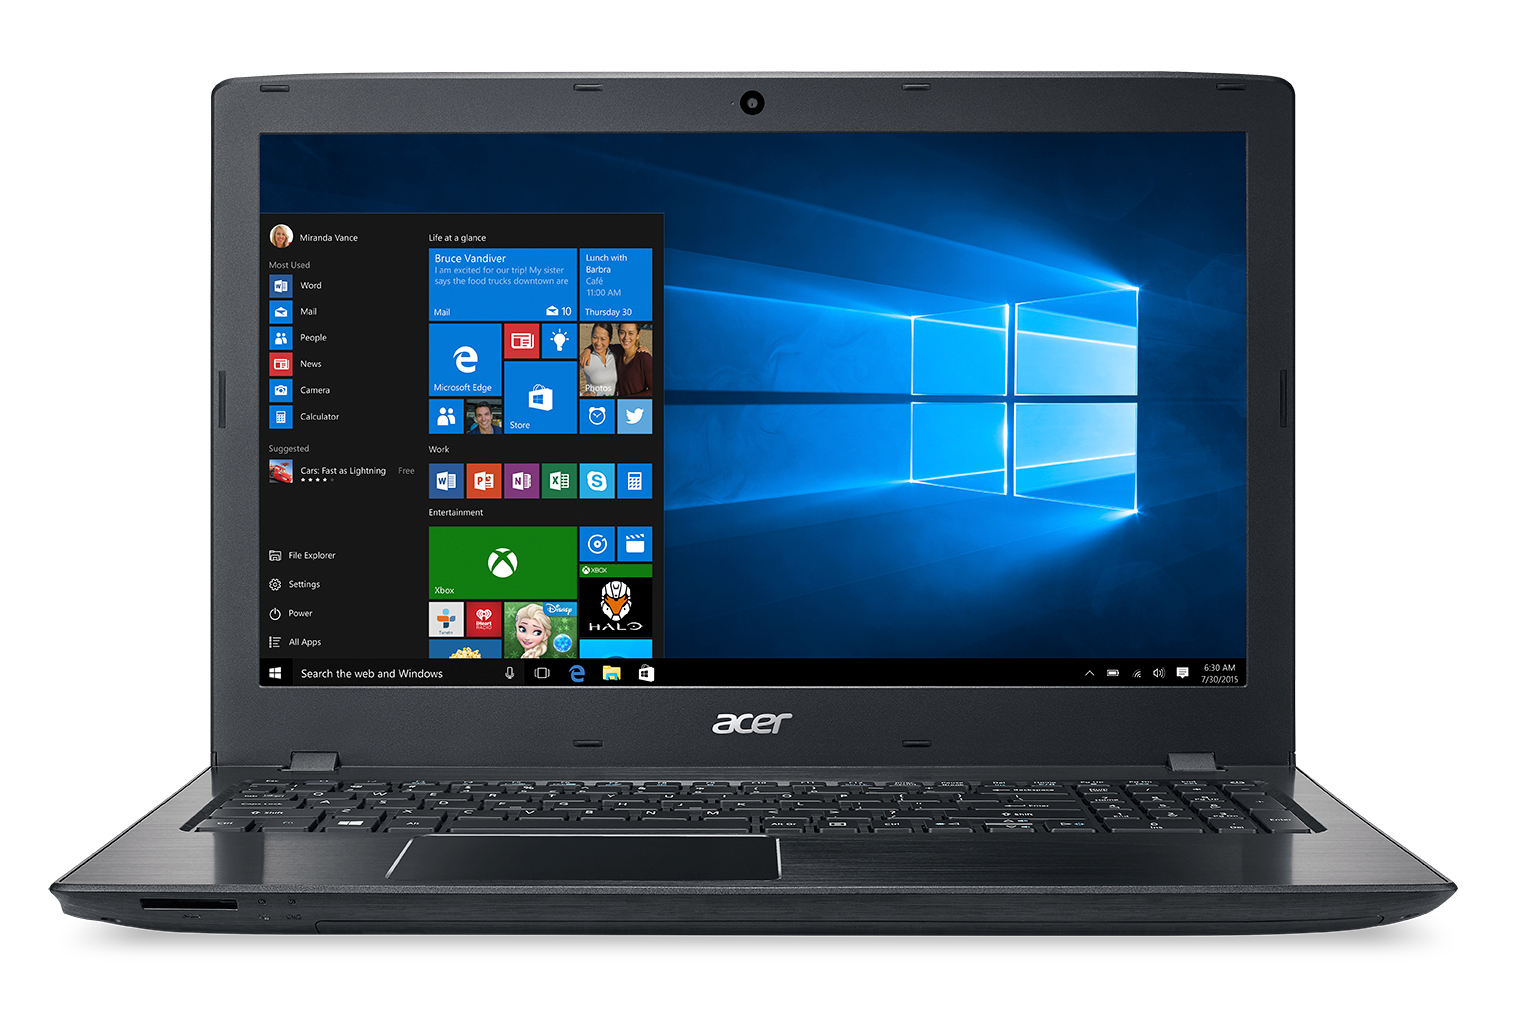 Acer Aspire E5-575-72N3, 15.6" Full HD, 7th Gen Intel Core i7-7500U, 8GB DDR4, 1TB HDD, Windows 10 Home - image 1 of 6